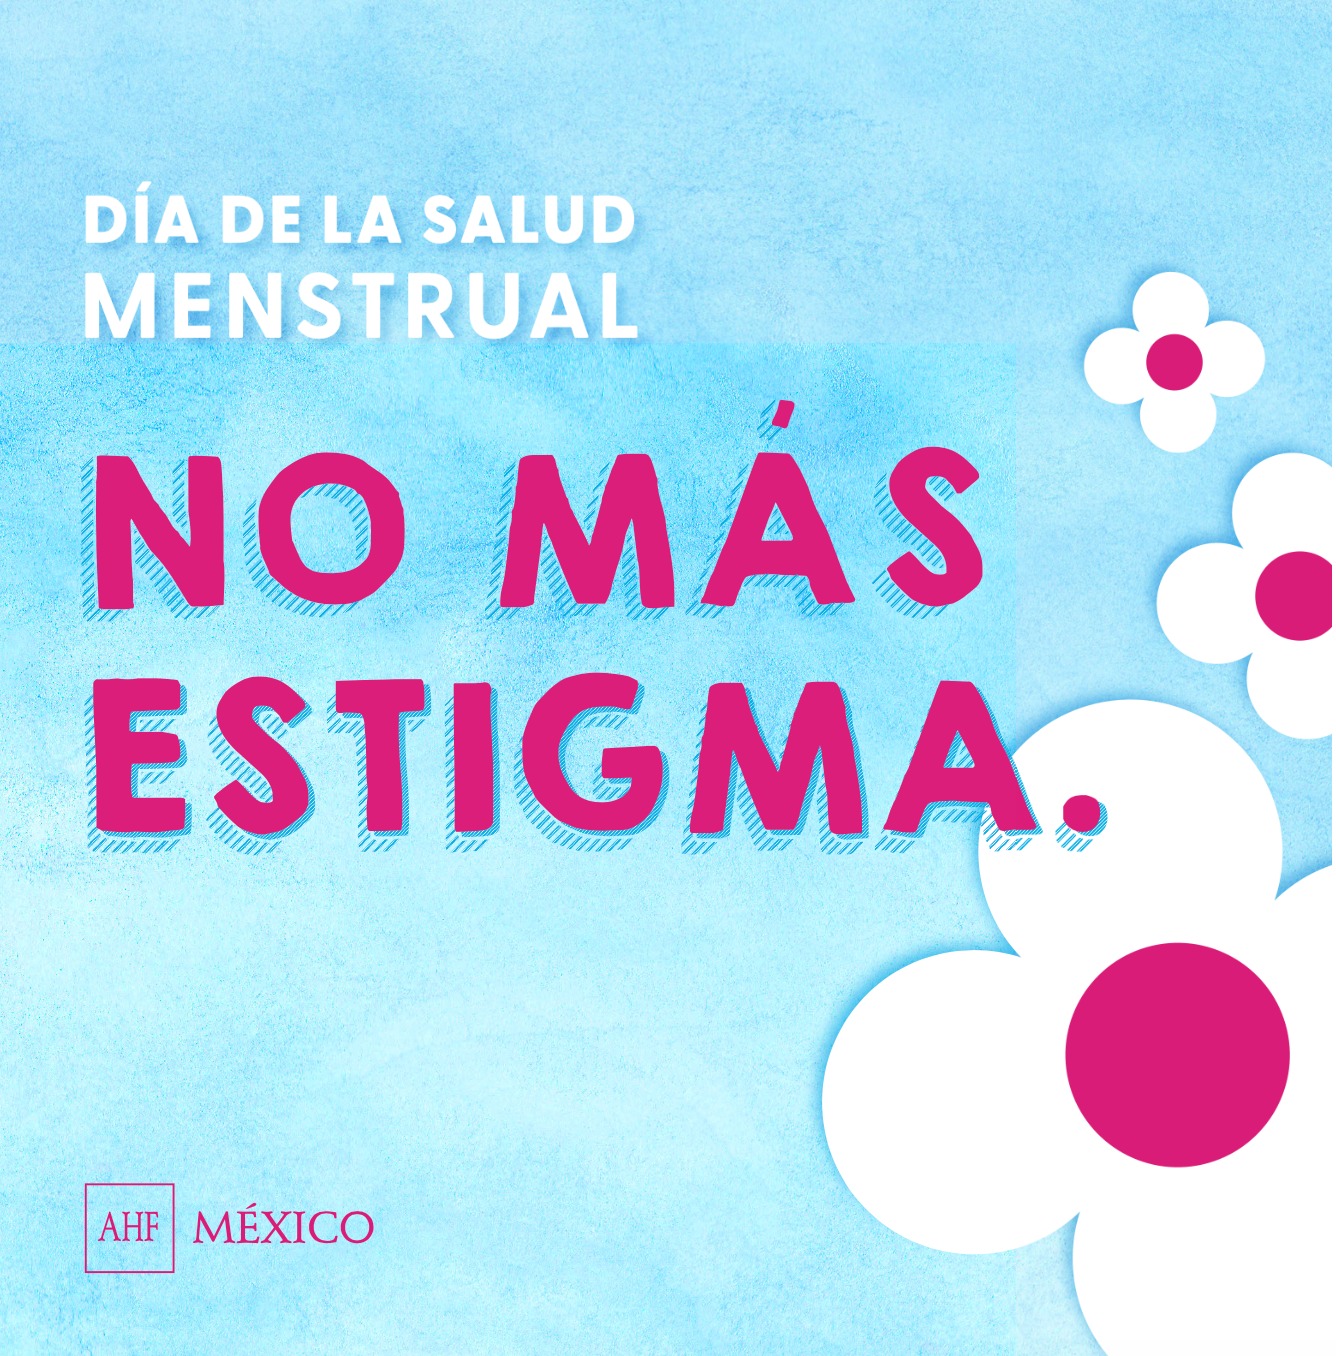 Frenan estigma y falta de acceso a insumos en la menstruación, el desarrollo de millones de mujeres y niñas